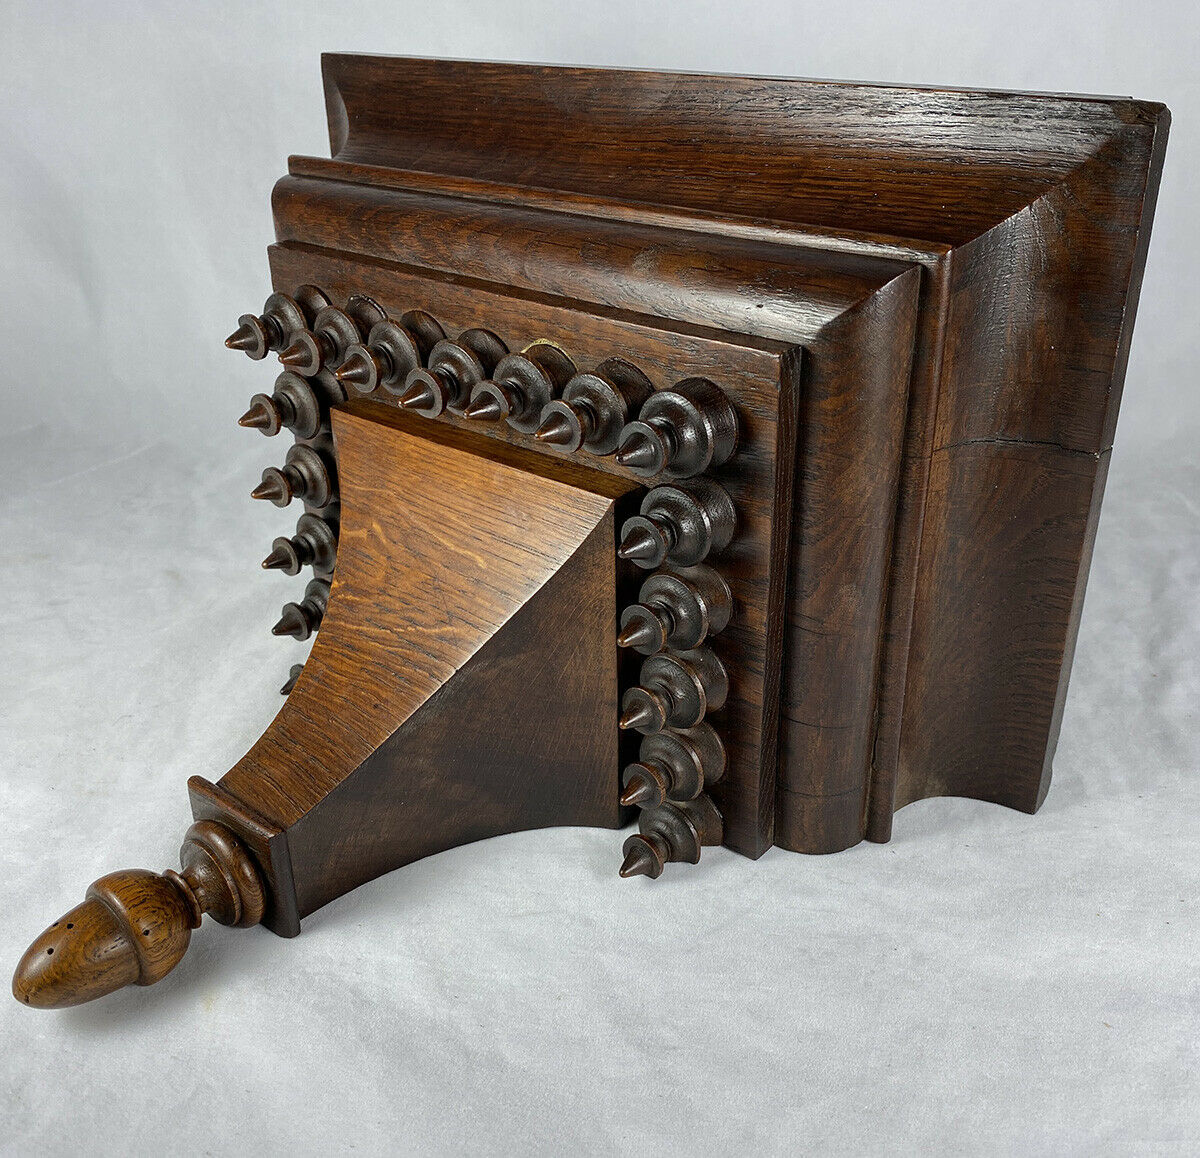 Solid Oak Antique Bracket or Clock Shelf, Lathe Turned Wood Design, 12.5" x 8"